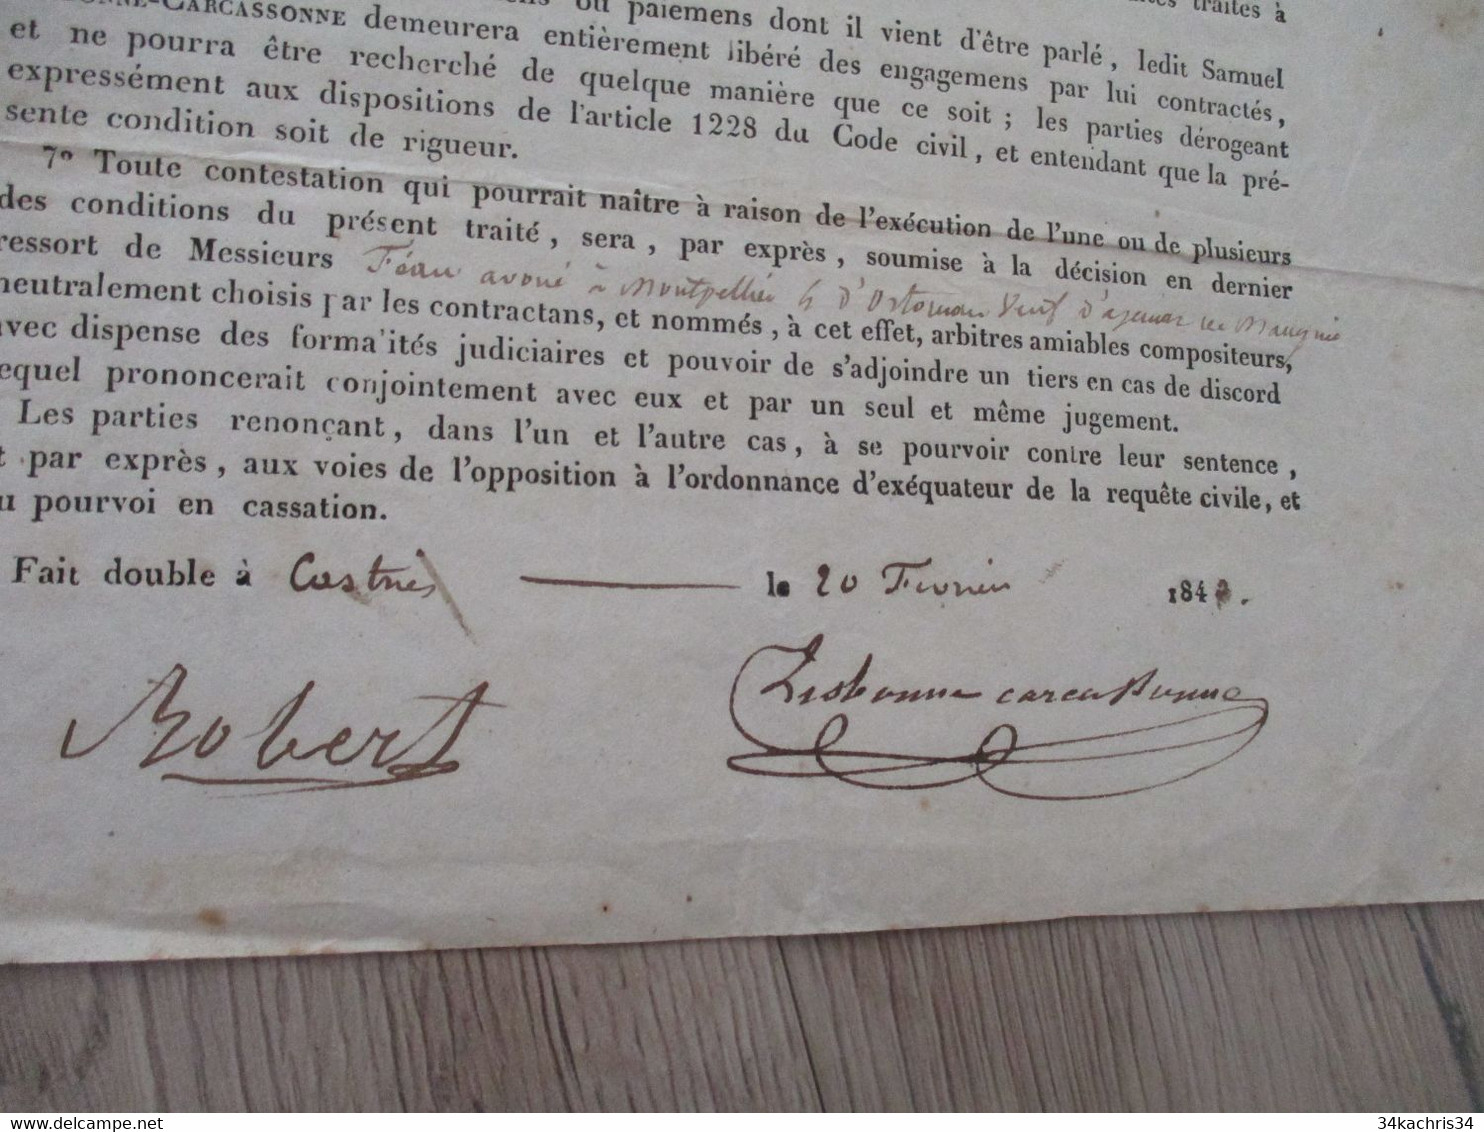 JF  Hérault   Vendargues Convention Lisbonne Carcassonne/Robert Soumission  Tirage De La Classe 1842 Conscrits - Manuskripte